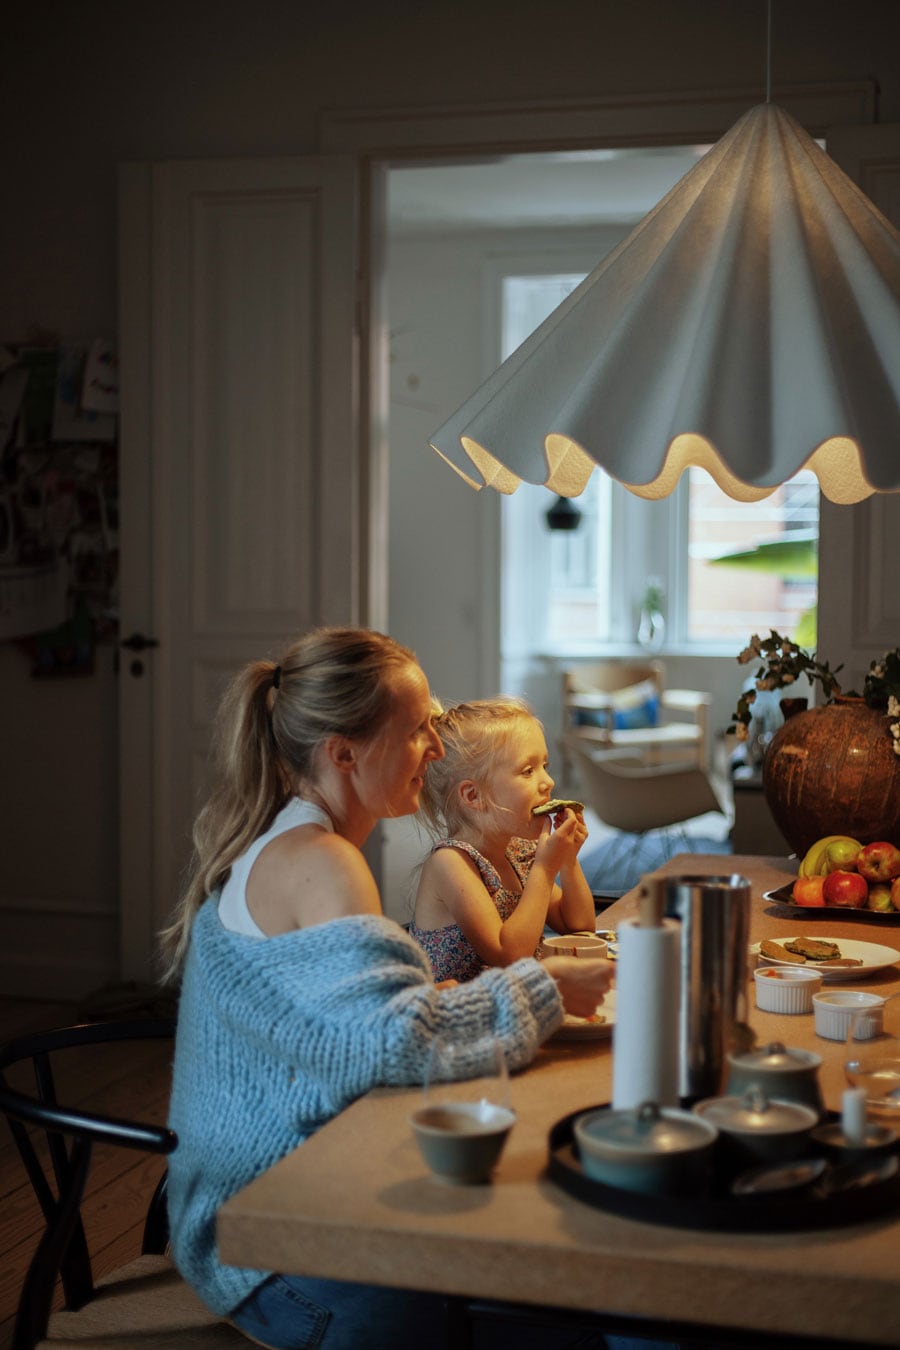 食事をしながら家族と1日のできごとを話すのが楽しみな時間（デンマーク・コペンハーゲン在住のペルニッレさん）。